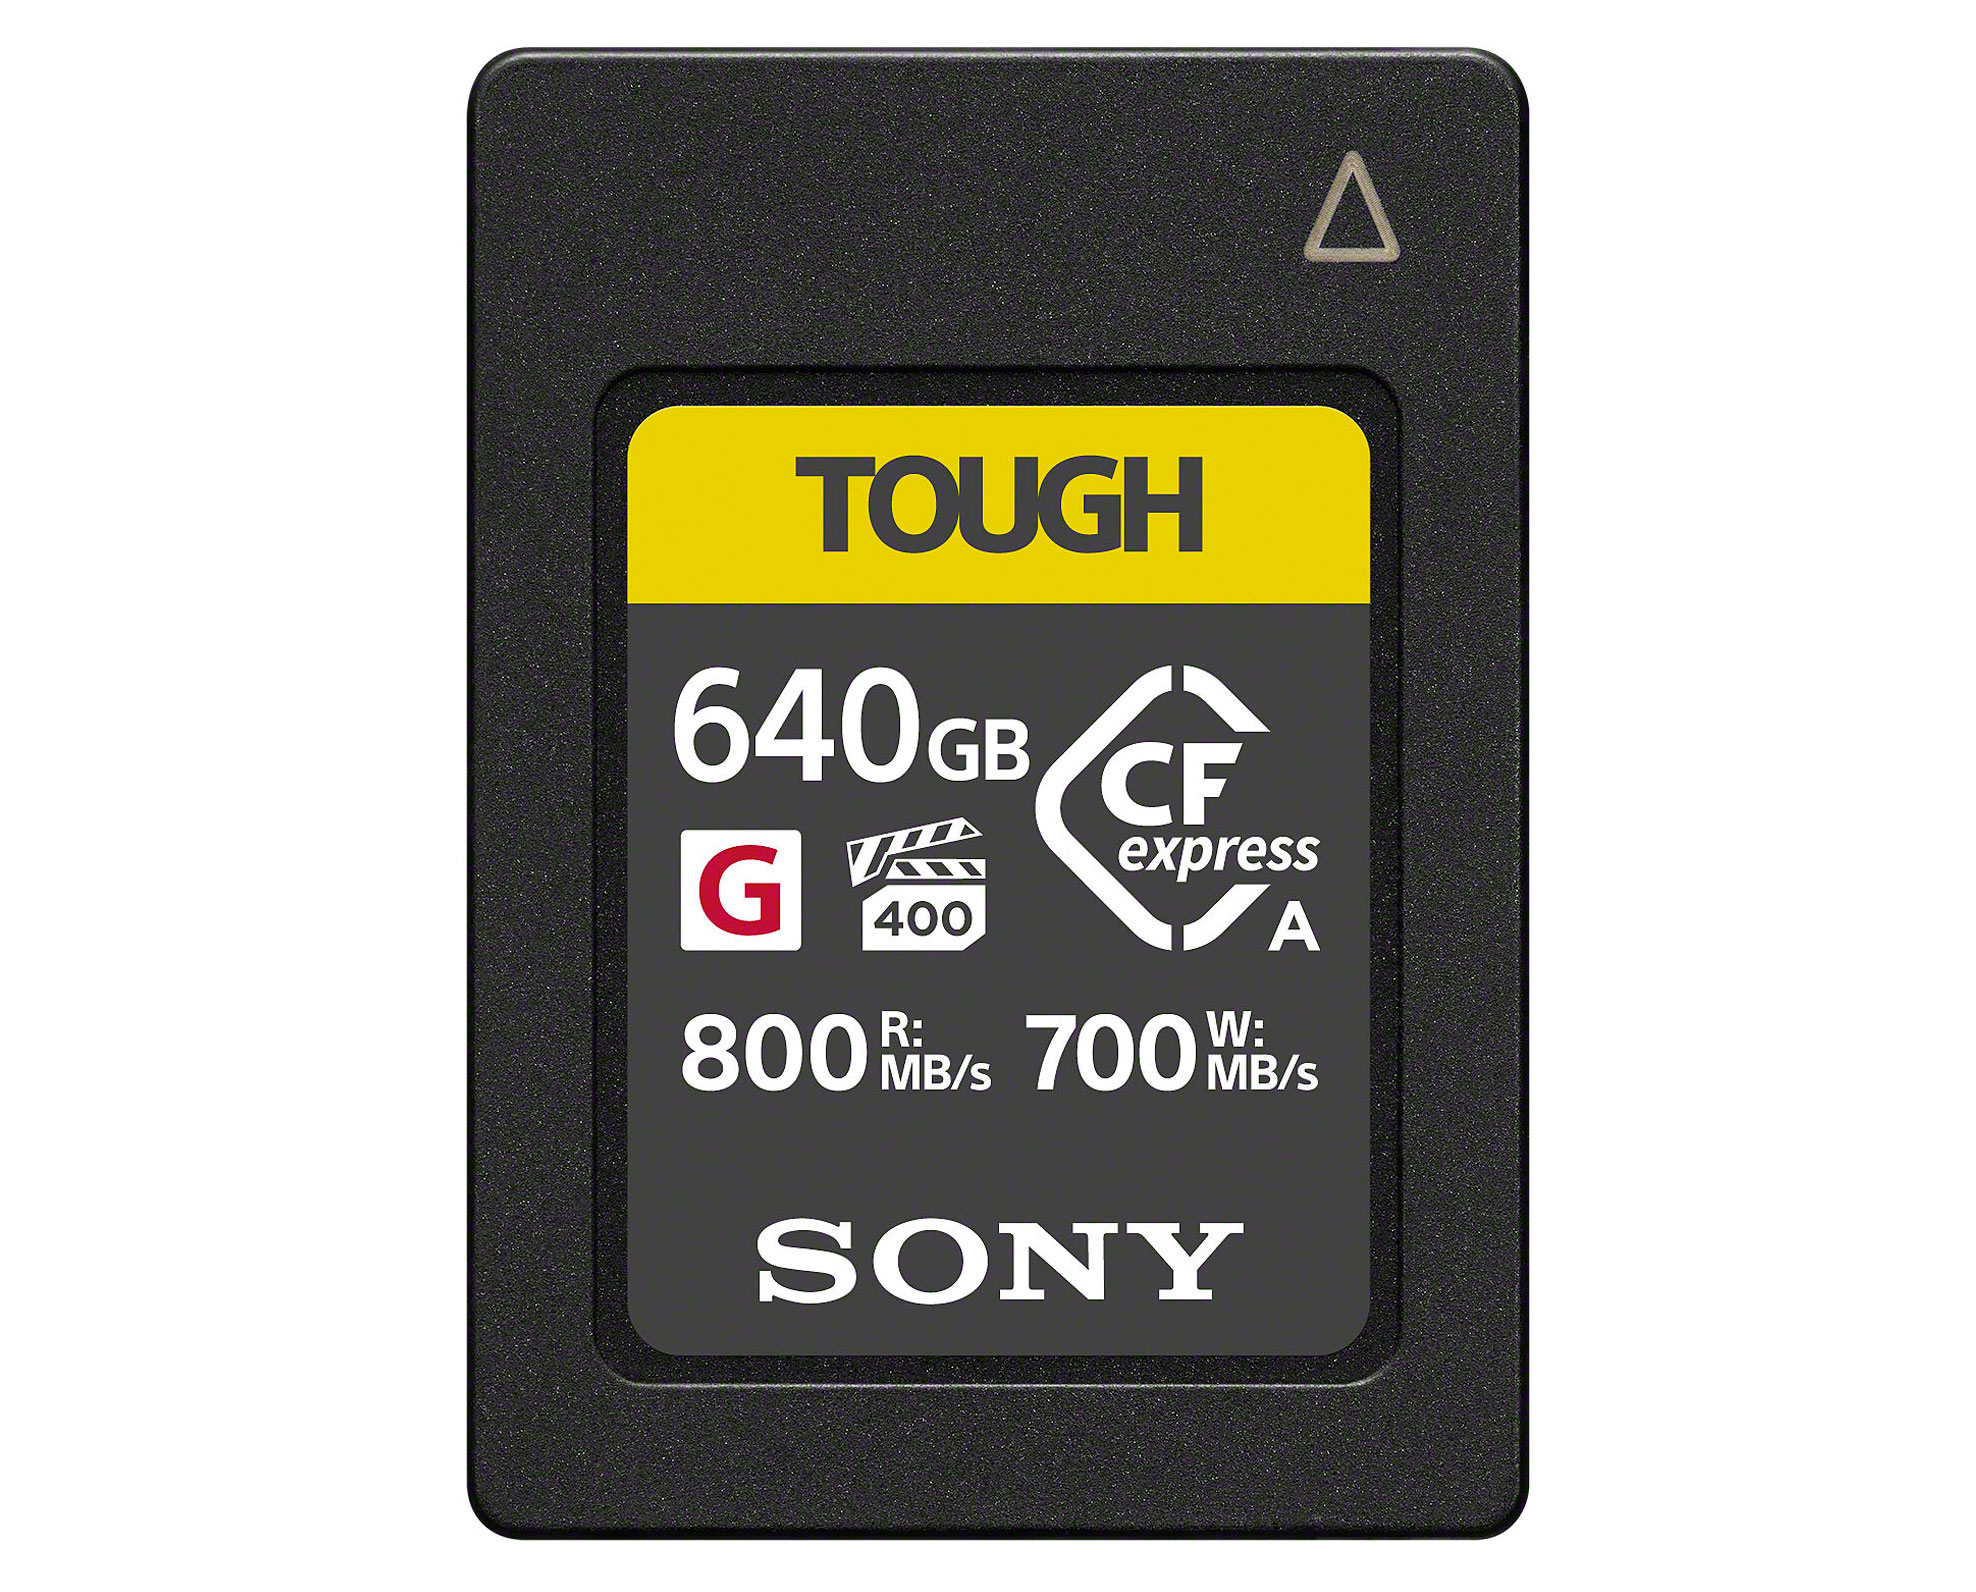 Sony CFexpress Type A Tough G 640GB